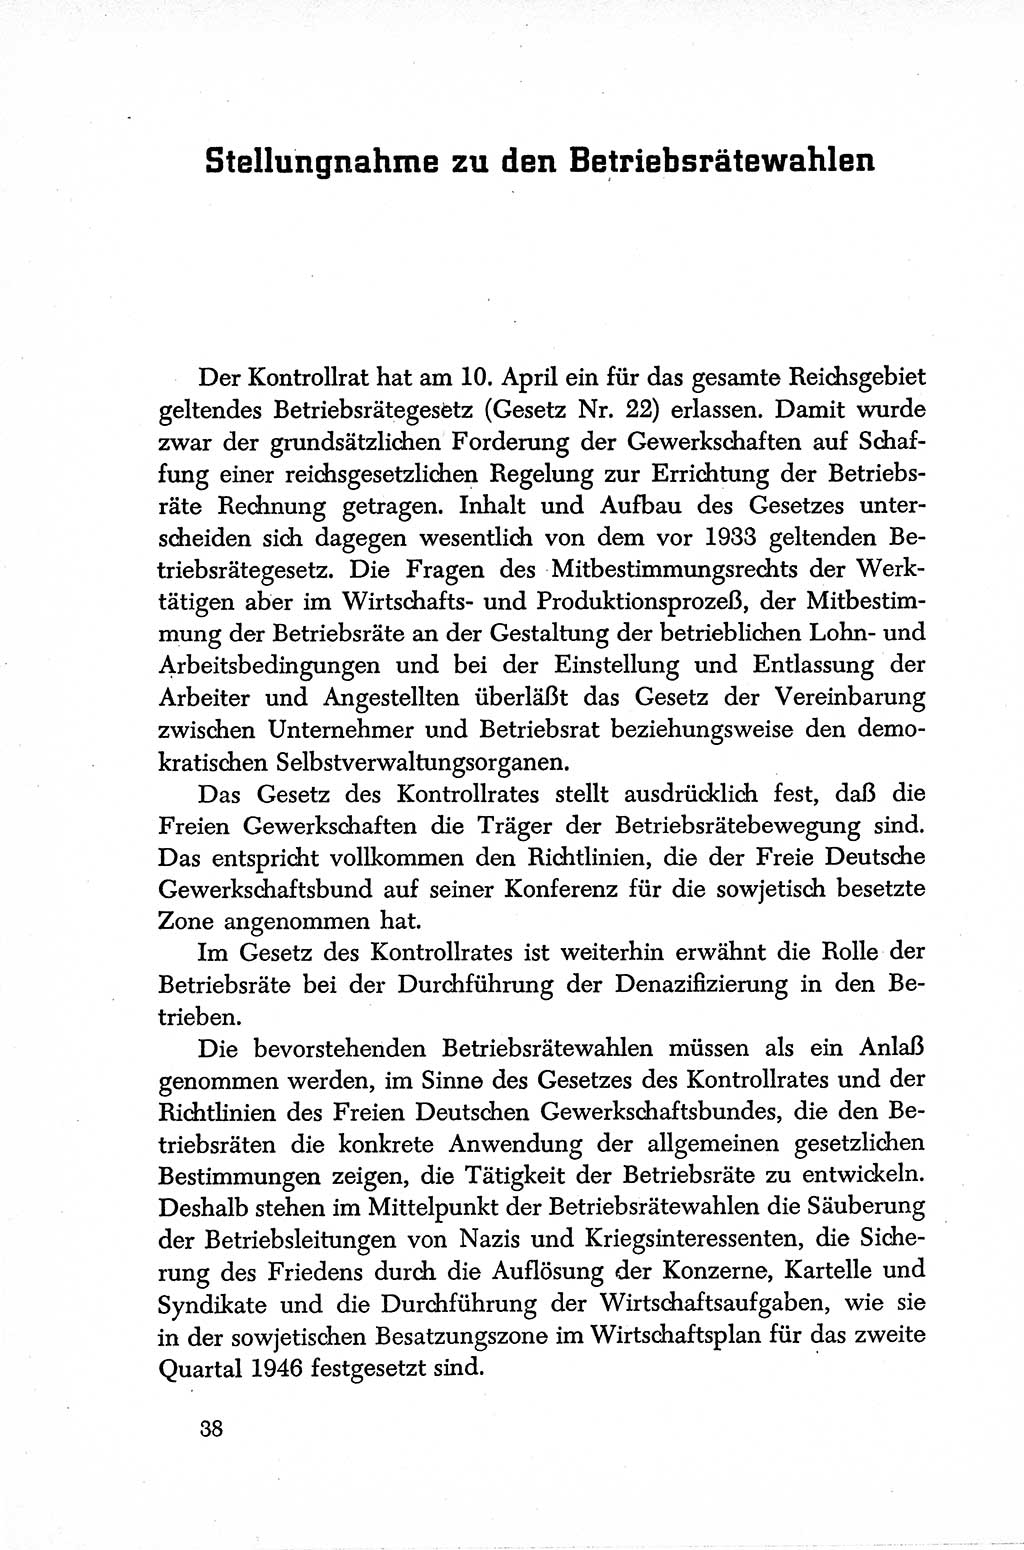 Dokumente der Sozialistischen Einheitspartei Deutschlands (SED) [Sowjetische Besatzungszone (SBZ) Deutschlands] 1946-1948, Seite 38 (Dok. SED SBZ Dtl. 1946-1948, S. 38)